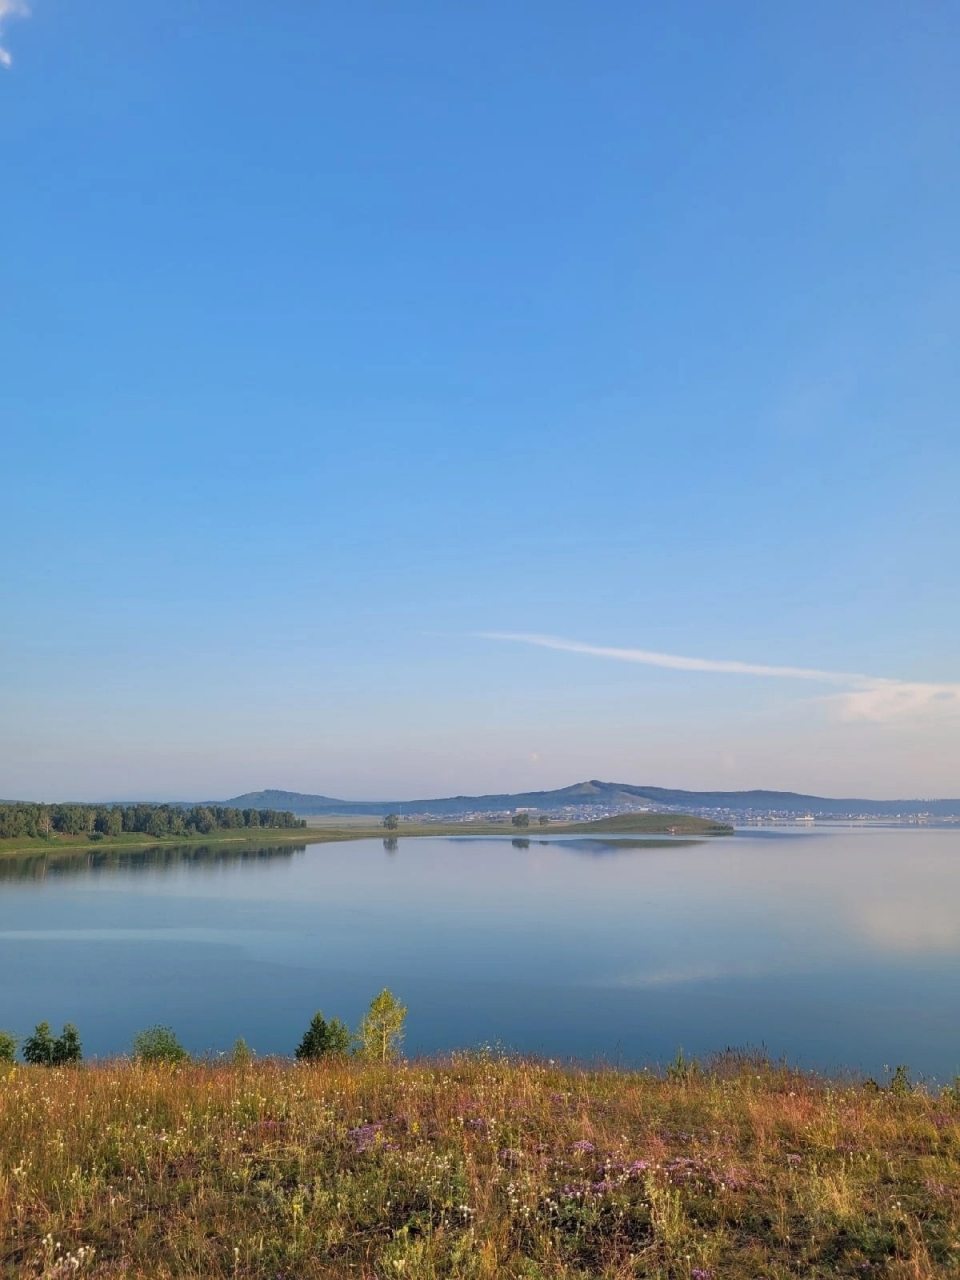 Вид на озеро, База отдыха Ургун